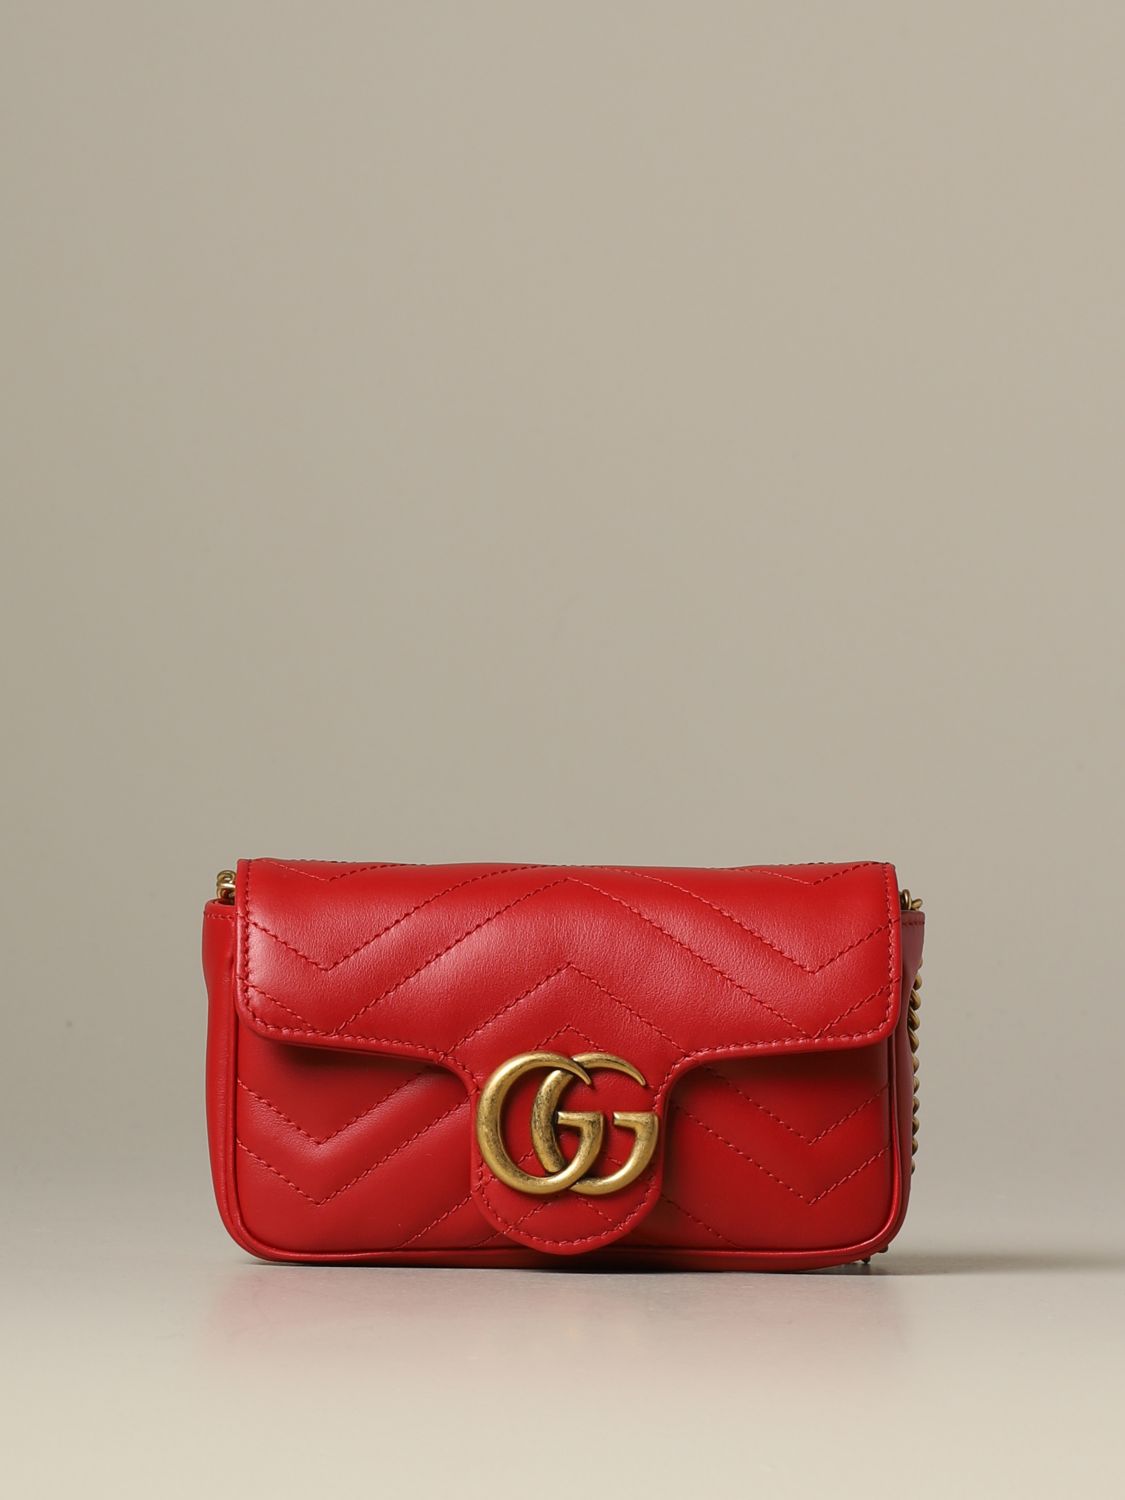 GUCCI: Super mini Marmont bag in leather - Red | Gucci mini bag 476433 ...